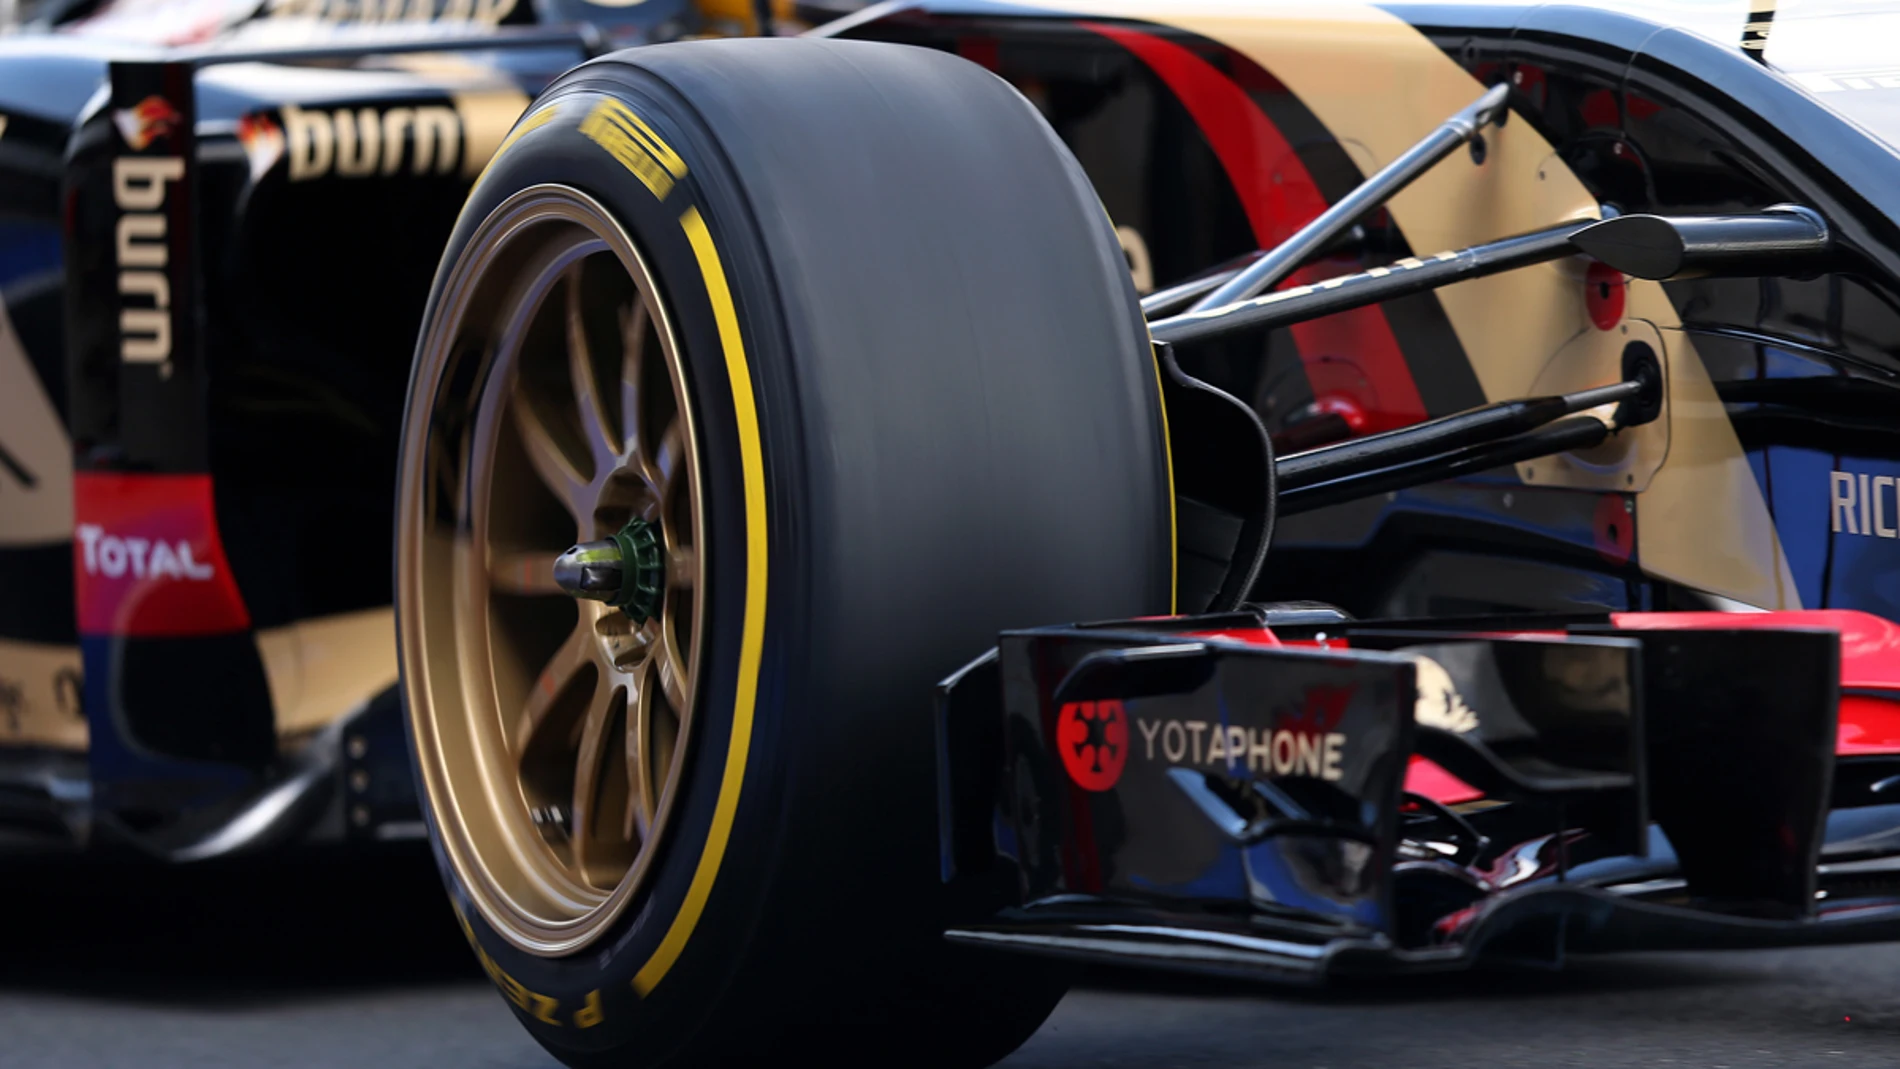 Detalle de los nuevos Pirelli de 18 pulgadas montados en el Lotus